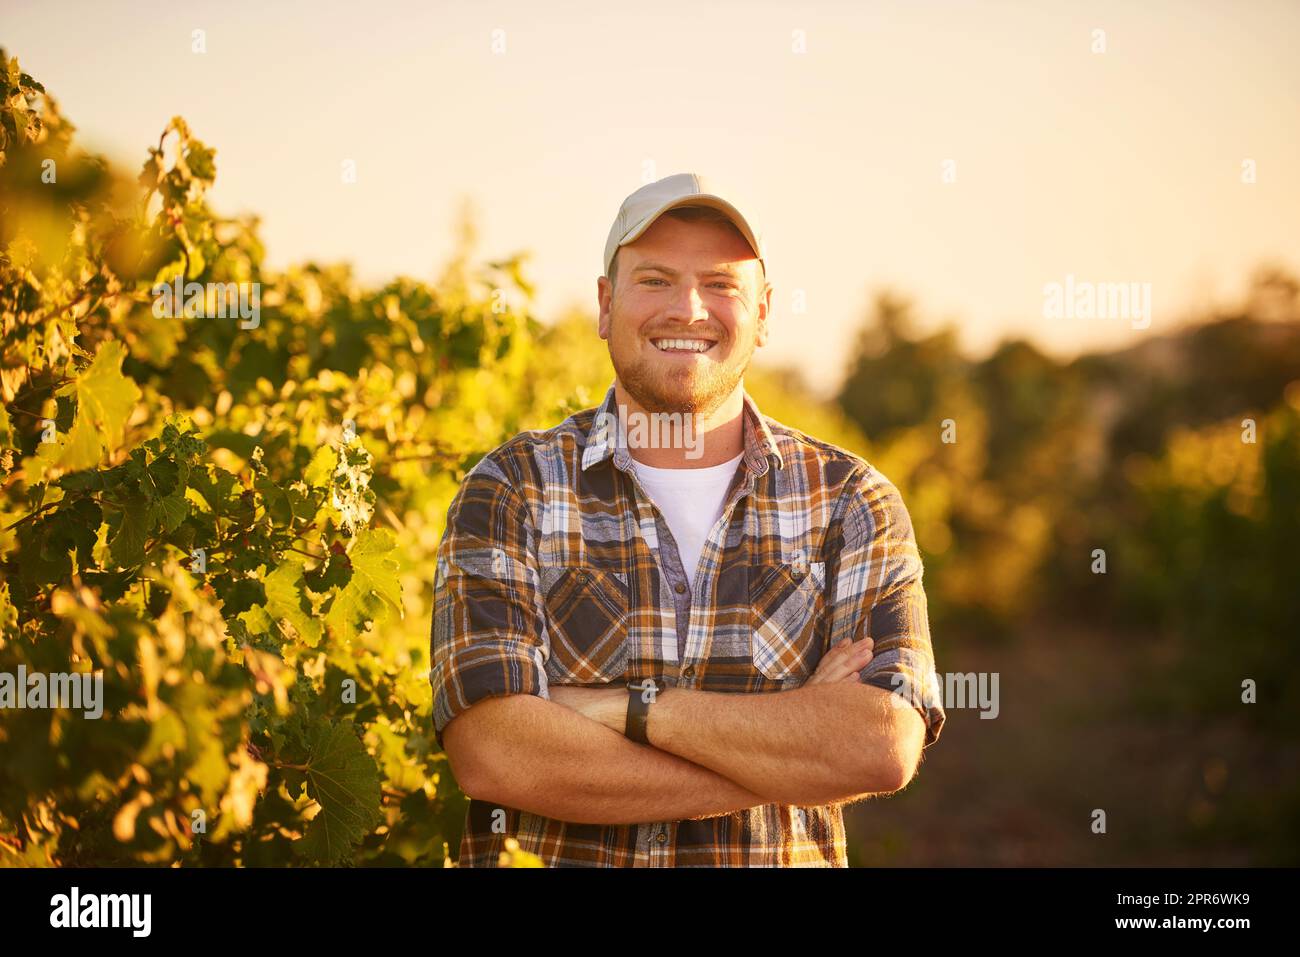 L'agricoltura è nel mio sangue. Ritratto di un contadino felice in posa con le braccia incrociate in un vigneto. Foto Stock